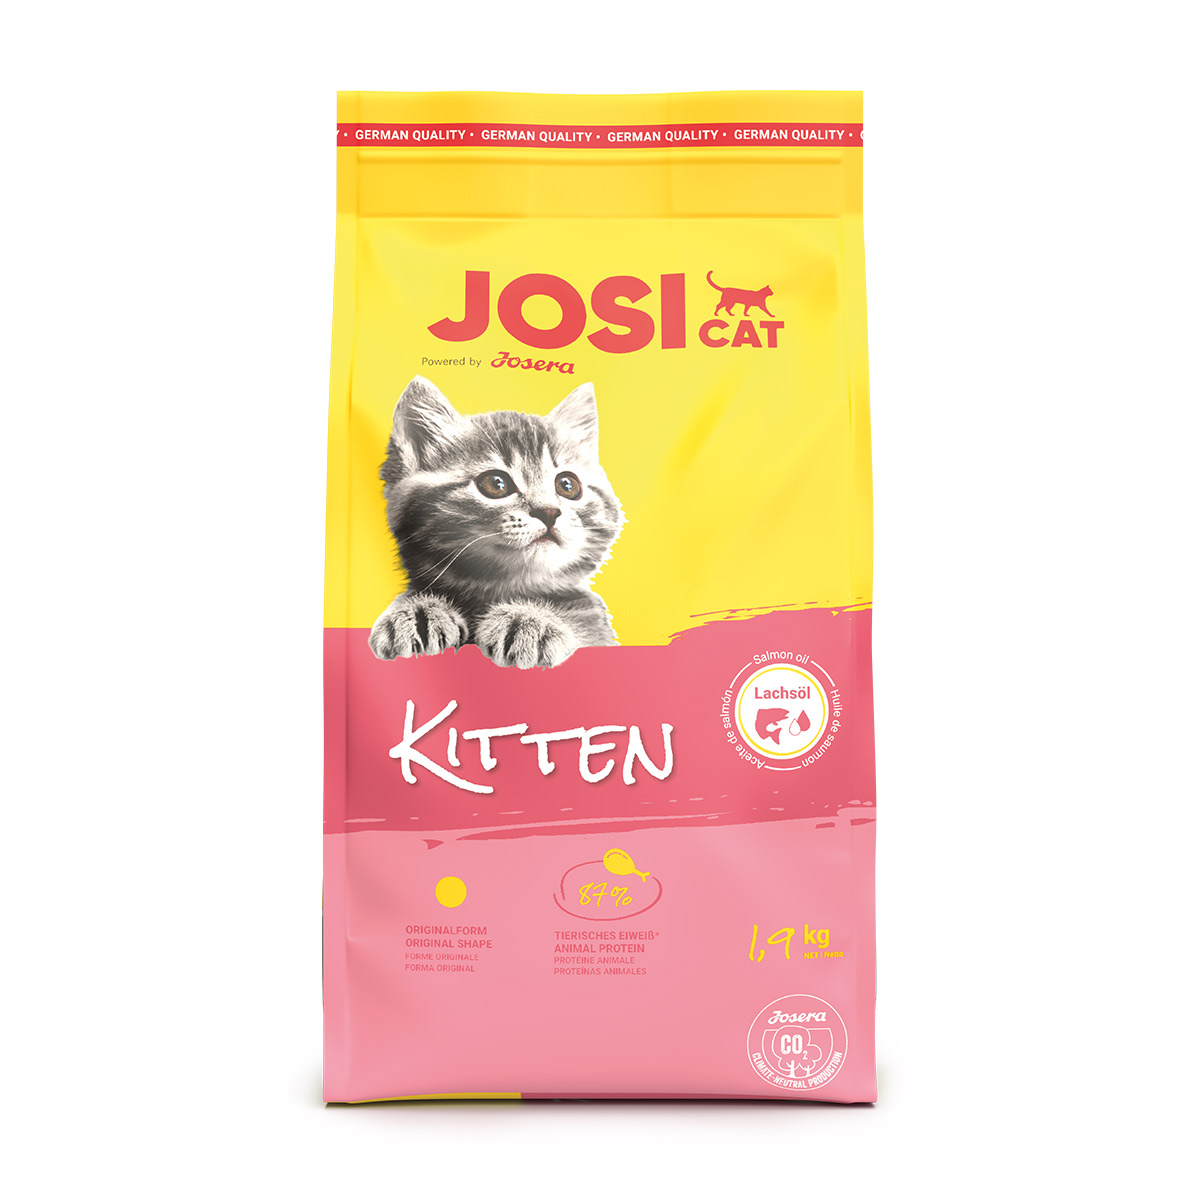 JosiCat Kitten 1,9 kg